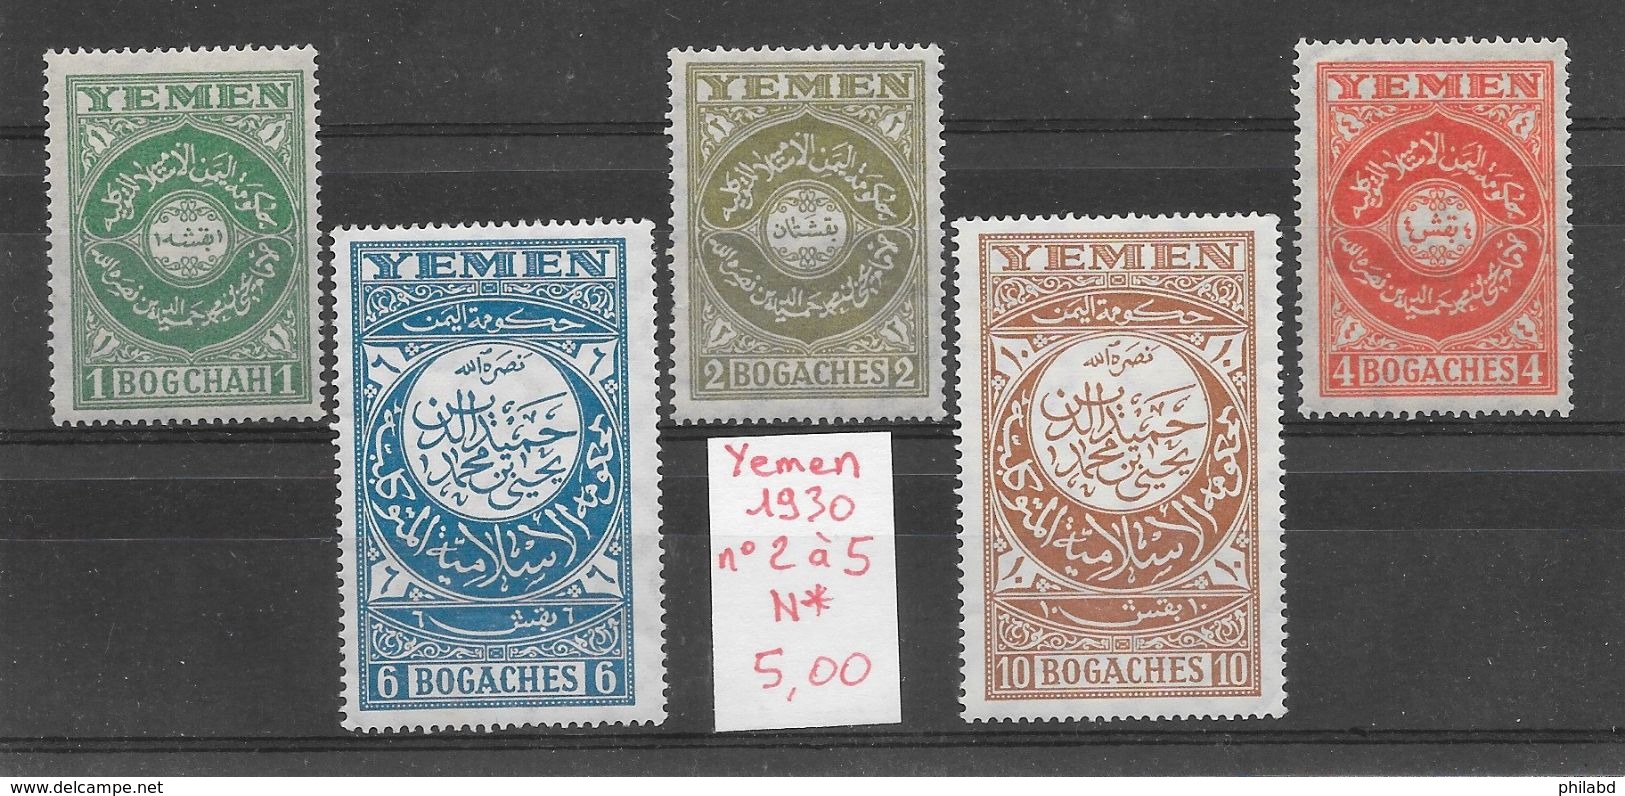 Yemen N°2 à 5 1930 * - Yemen